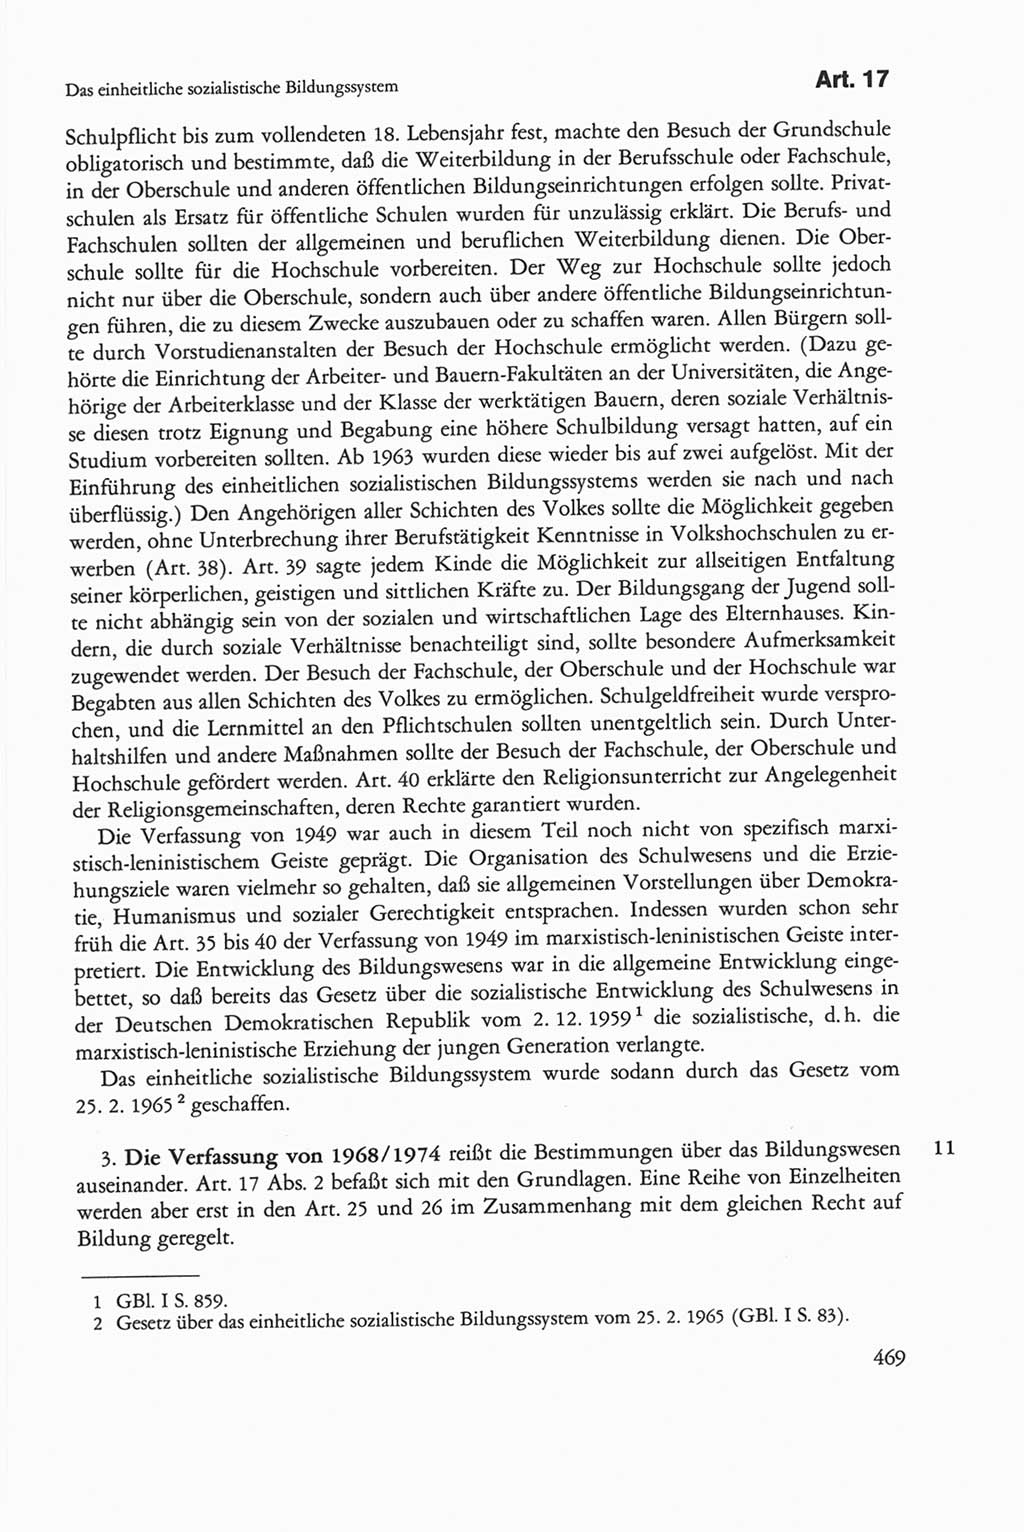 Die sozialistische Verfassung der Deutschen Demokratischen Republik (DDR), Kommentar mit einem Nachtrag 1997, Seite 469 (Soz. Verf. DDR Komm. Nachtr. 1997, S. 469)